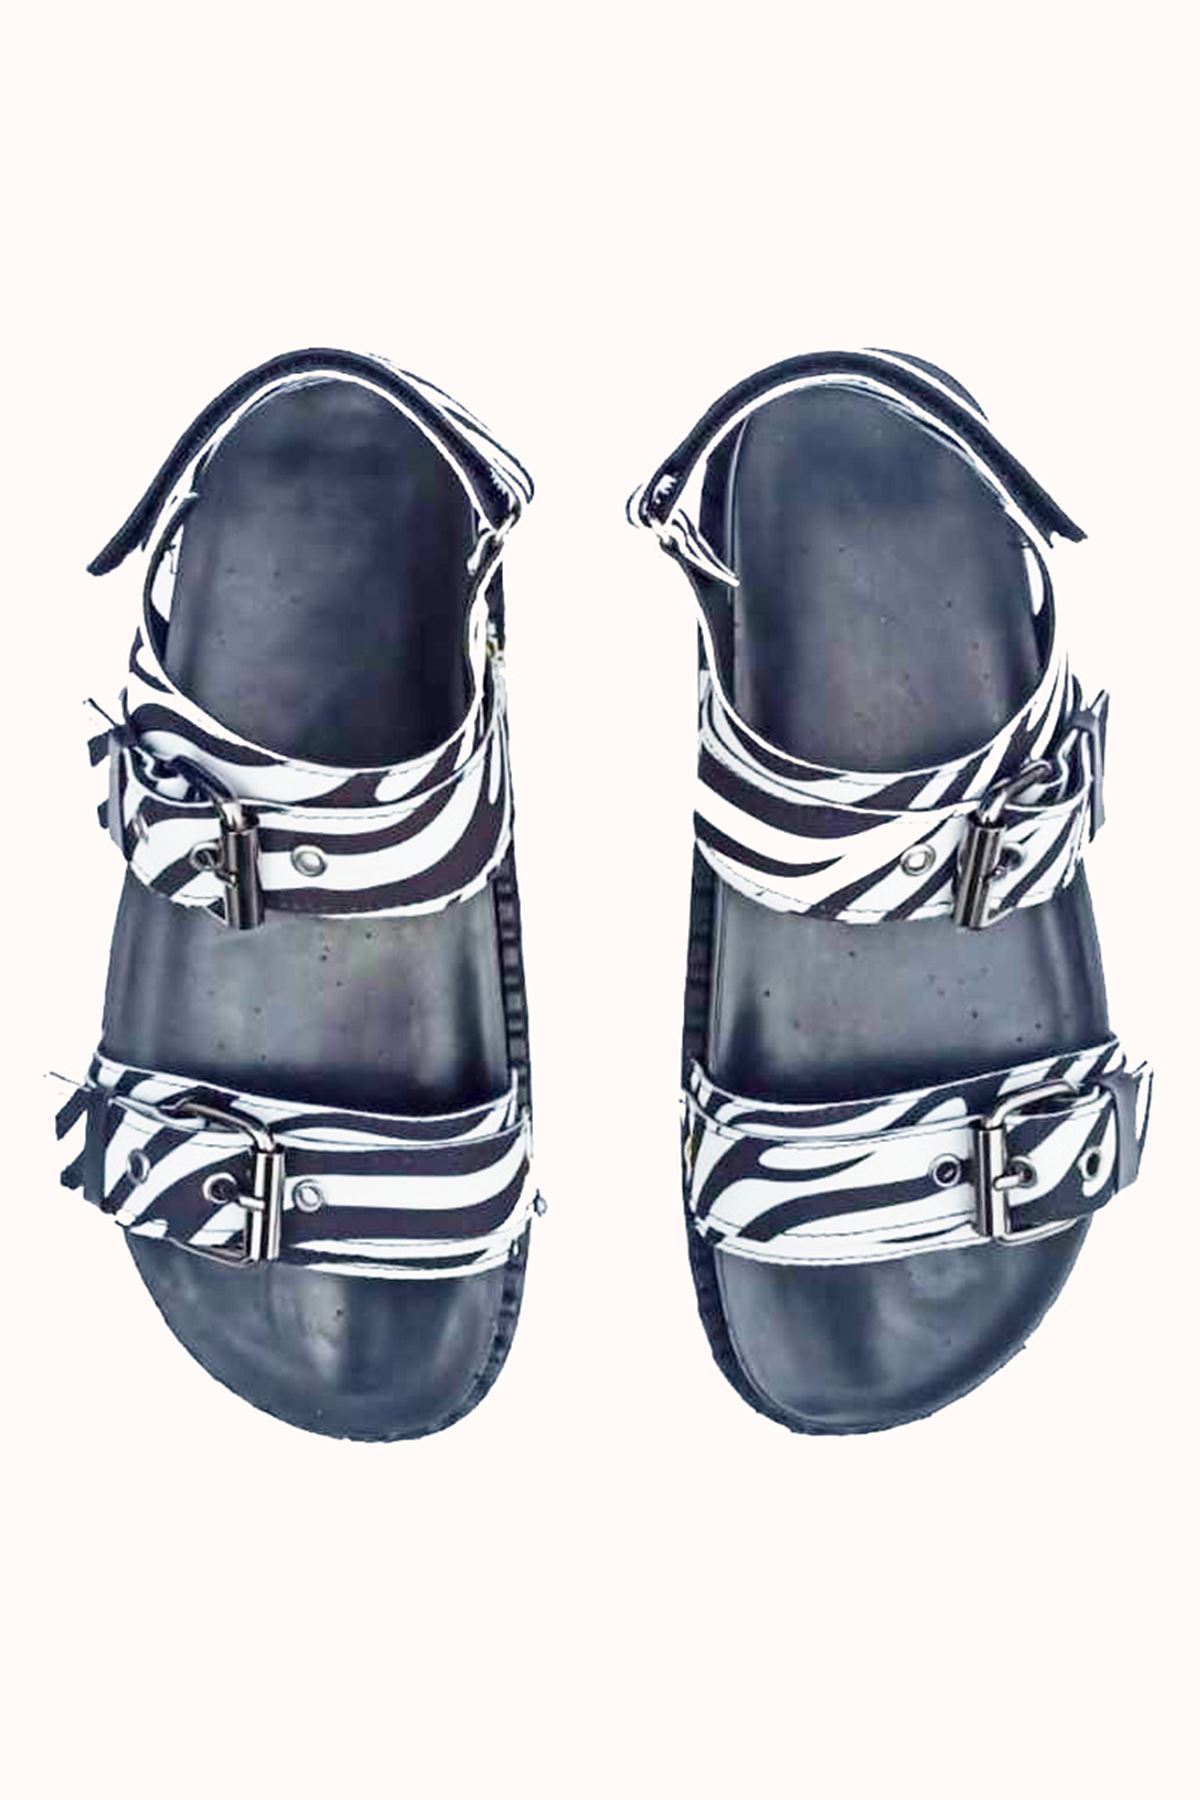 Myles Zebra Platin Tokalı Kadın Sandalet